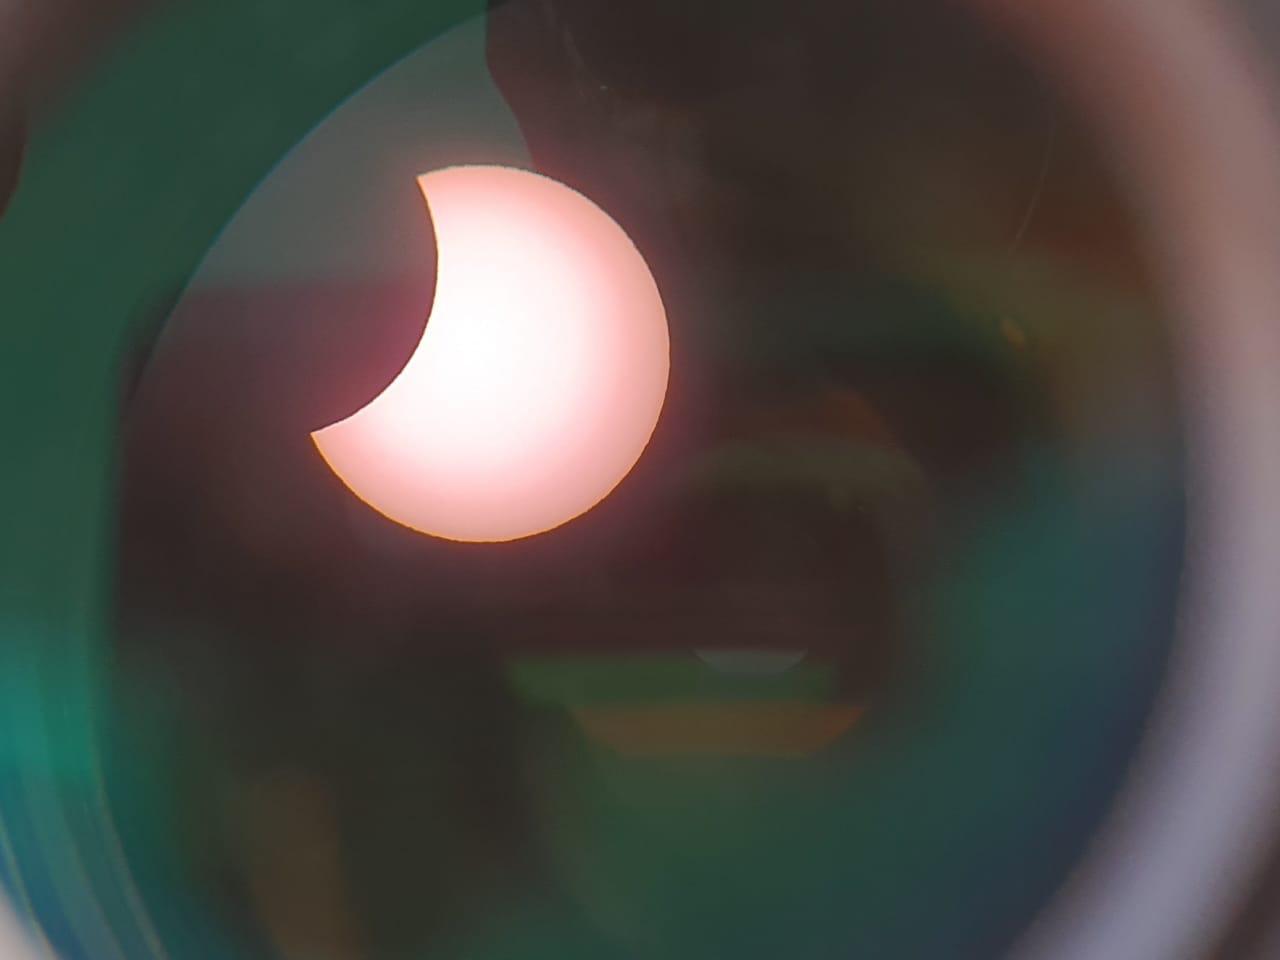 eclipse-20191226-mobeenkhalid-02.jpg